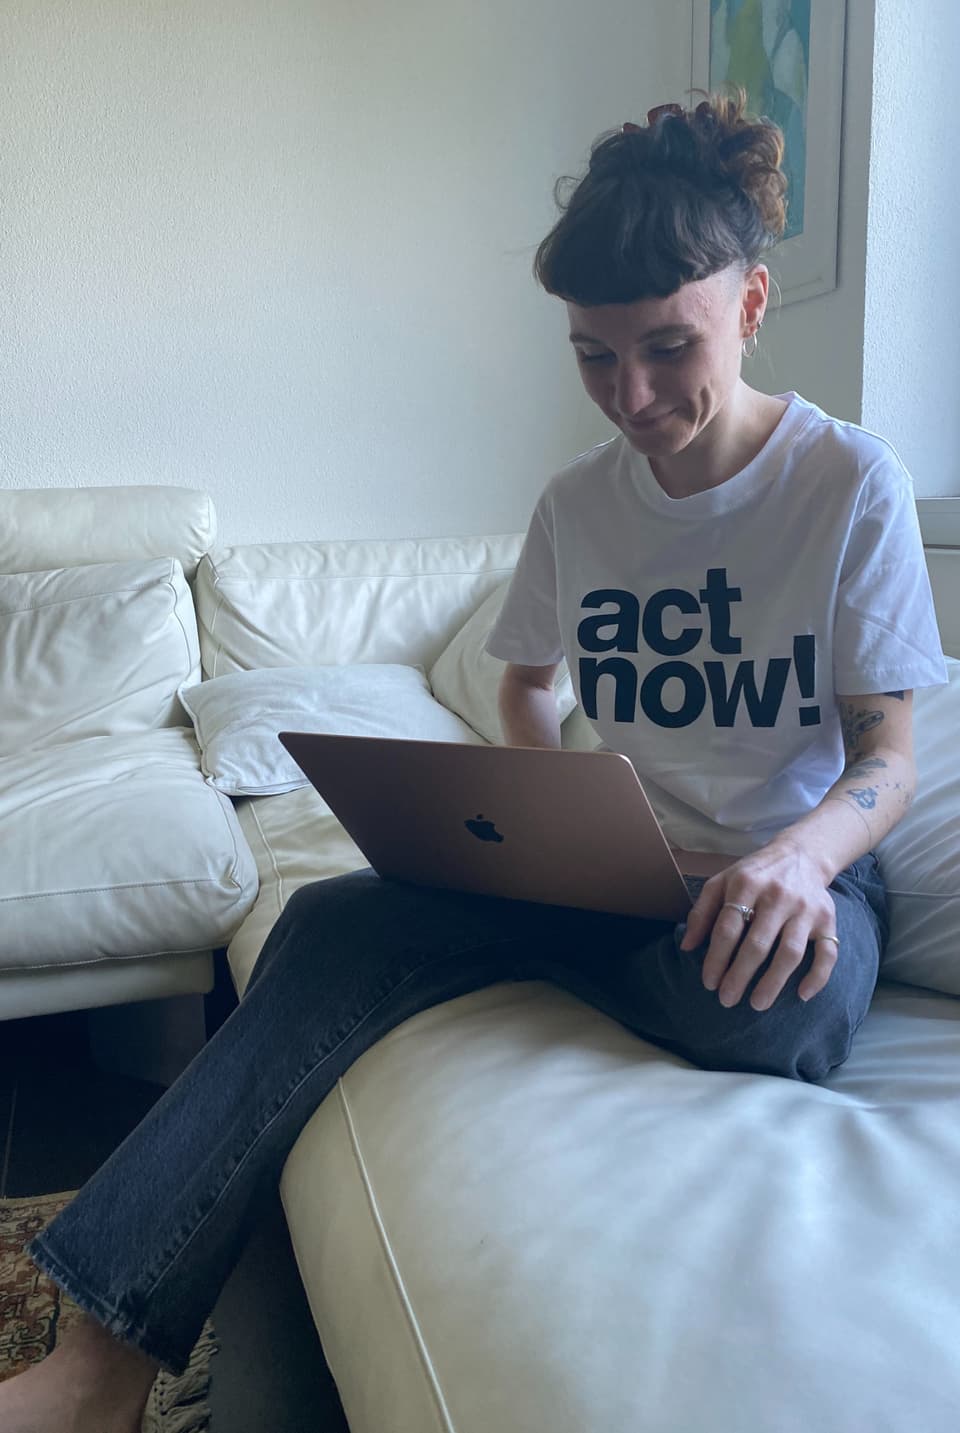 Eine junge Frau mit hochgesteckten Haaren und T-Shirt mit «Act now!»-Aufschrift schaut in einen Laptop.